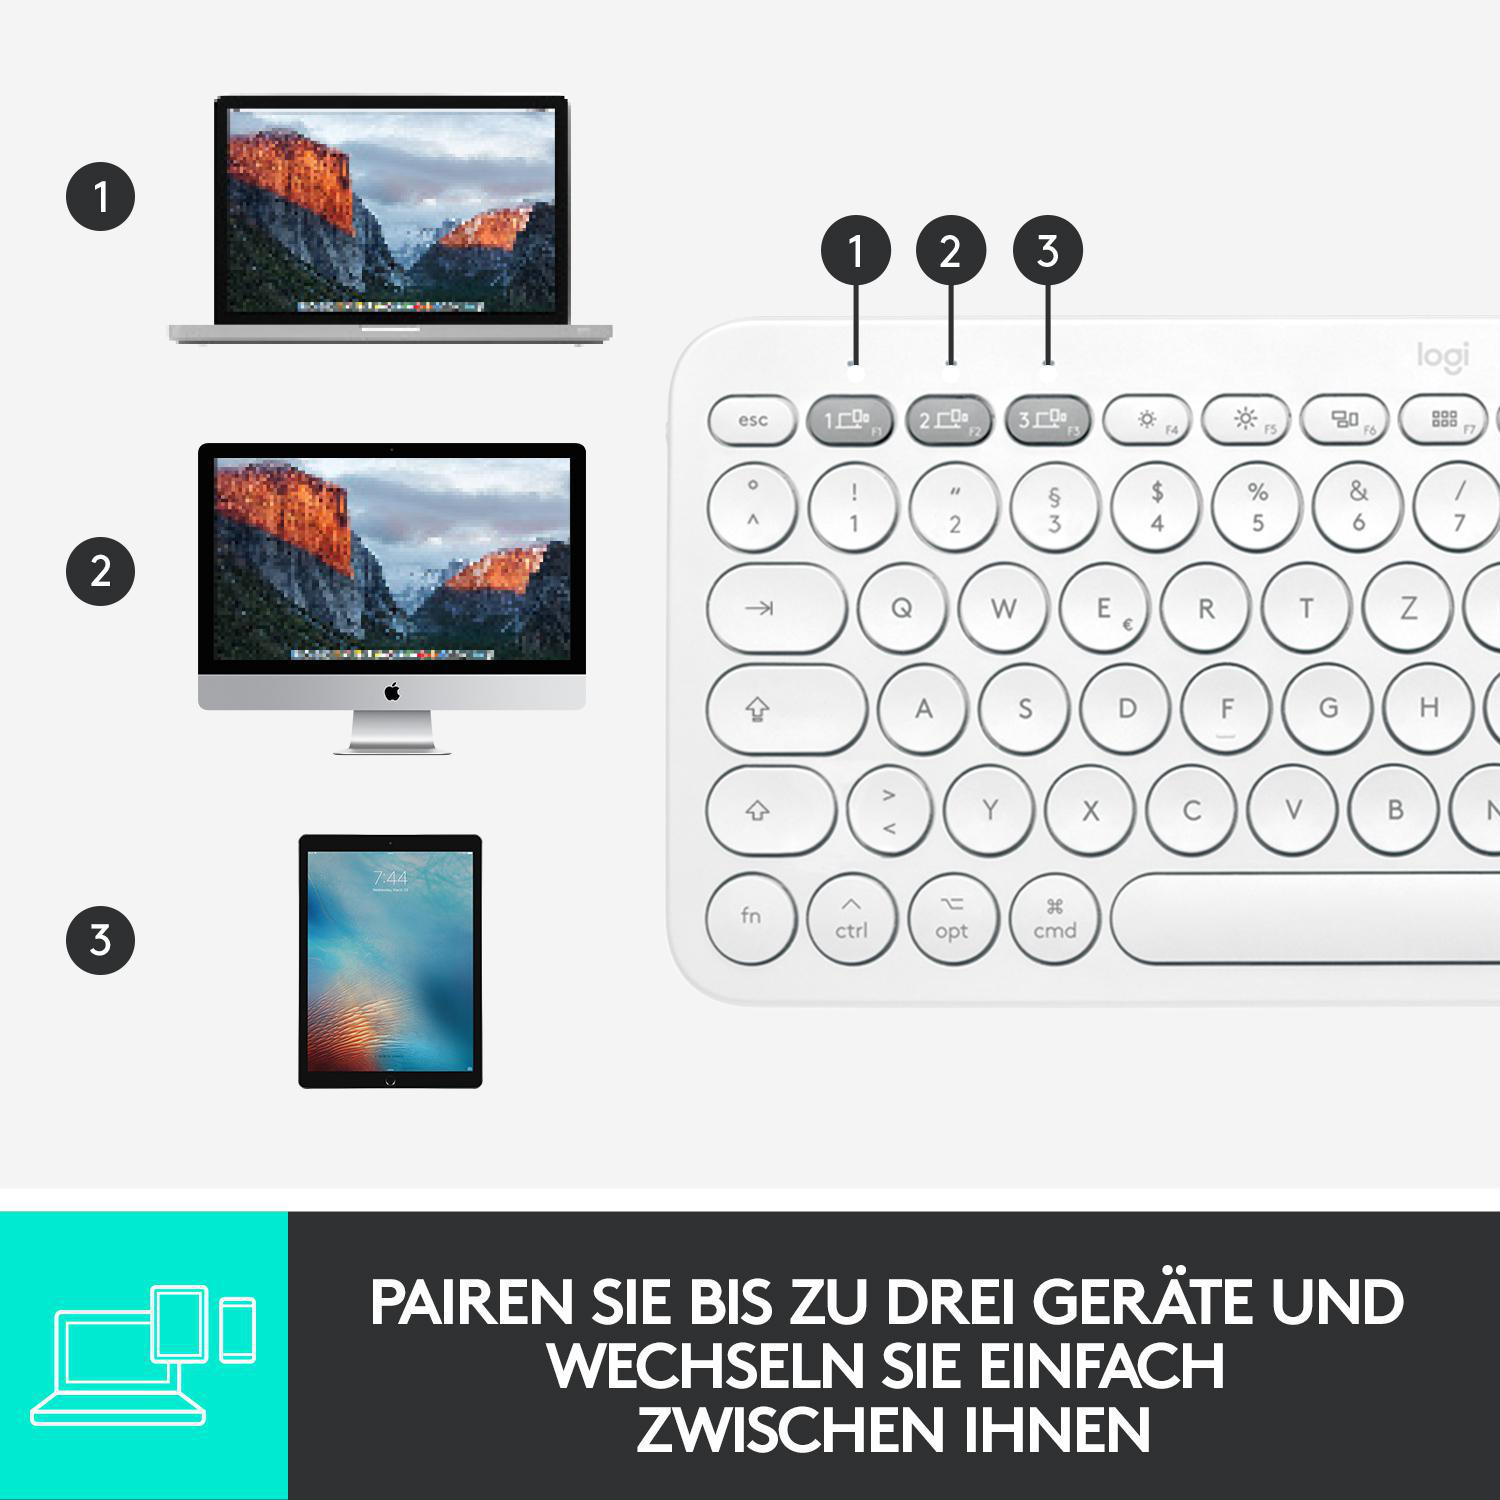 LOGITECH K380 Multi-Device, für Mac, kabellos, Tastatur, Bluetooth, Weiß